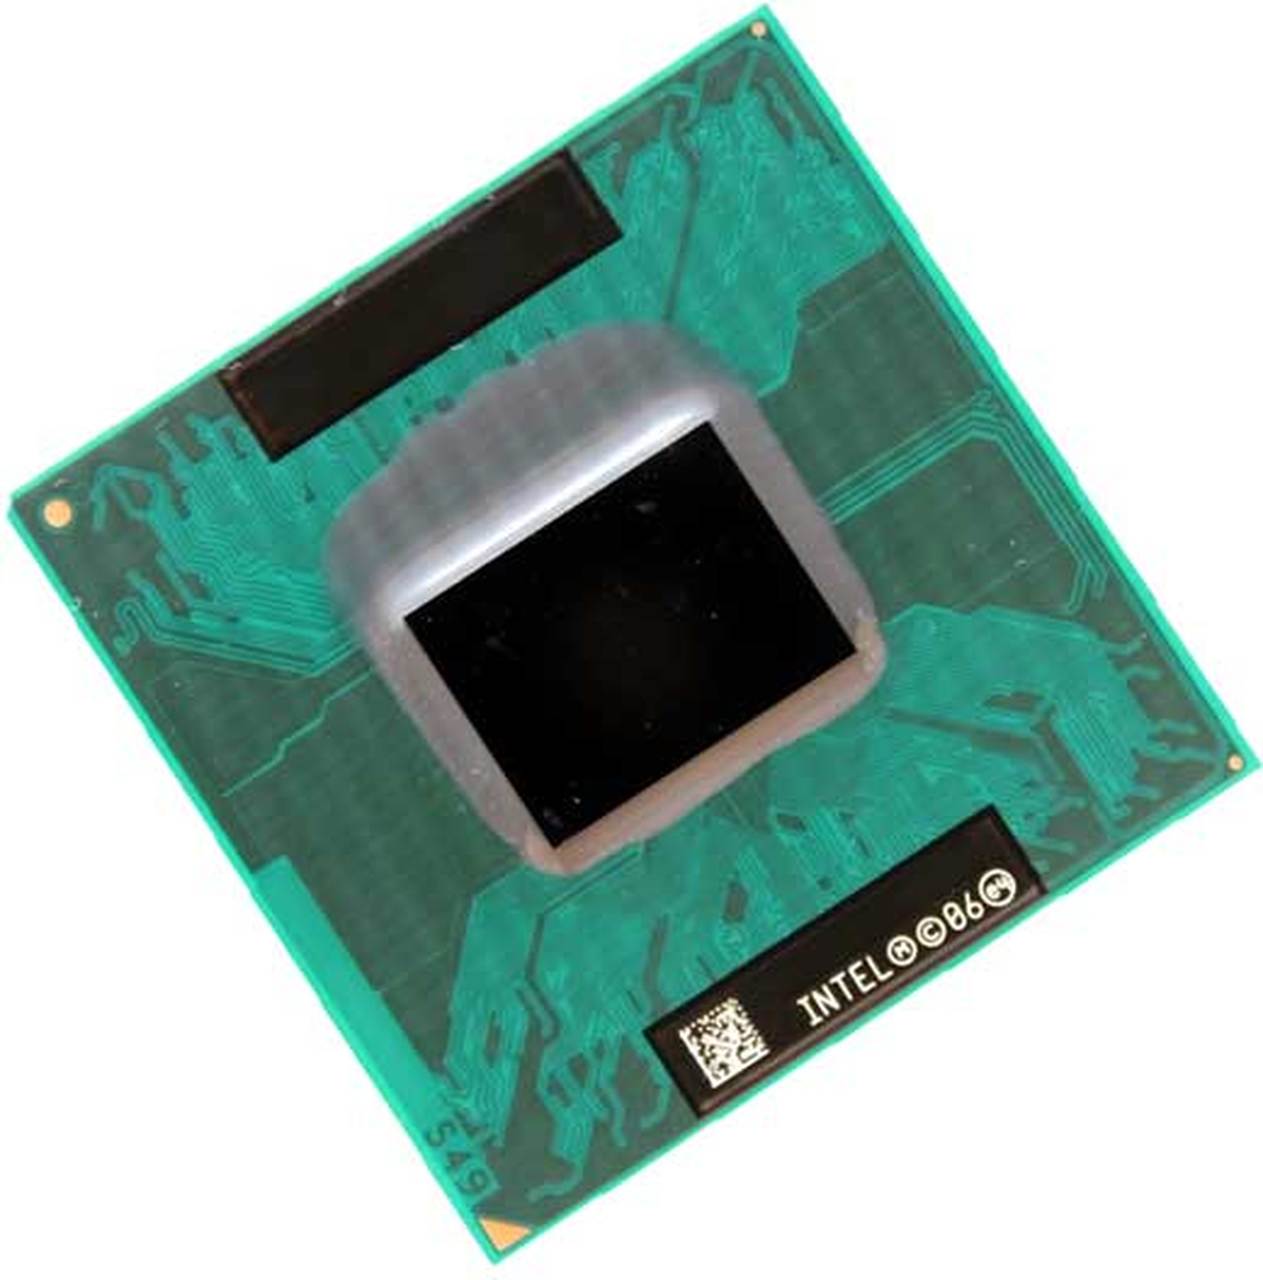 LF80538GF0282ME | Intel Core Solo T1300 1 Core 1.66GHz PGA478 2 MB L2 Processor